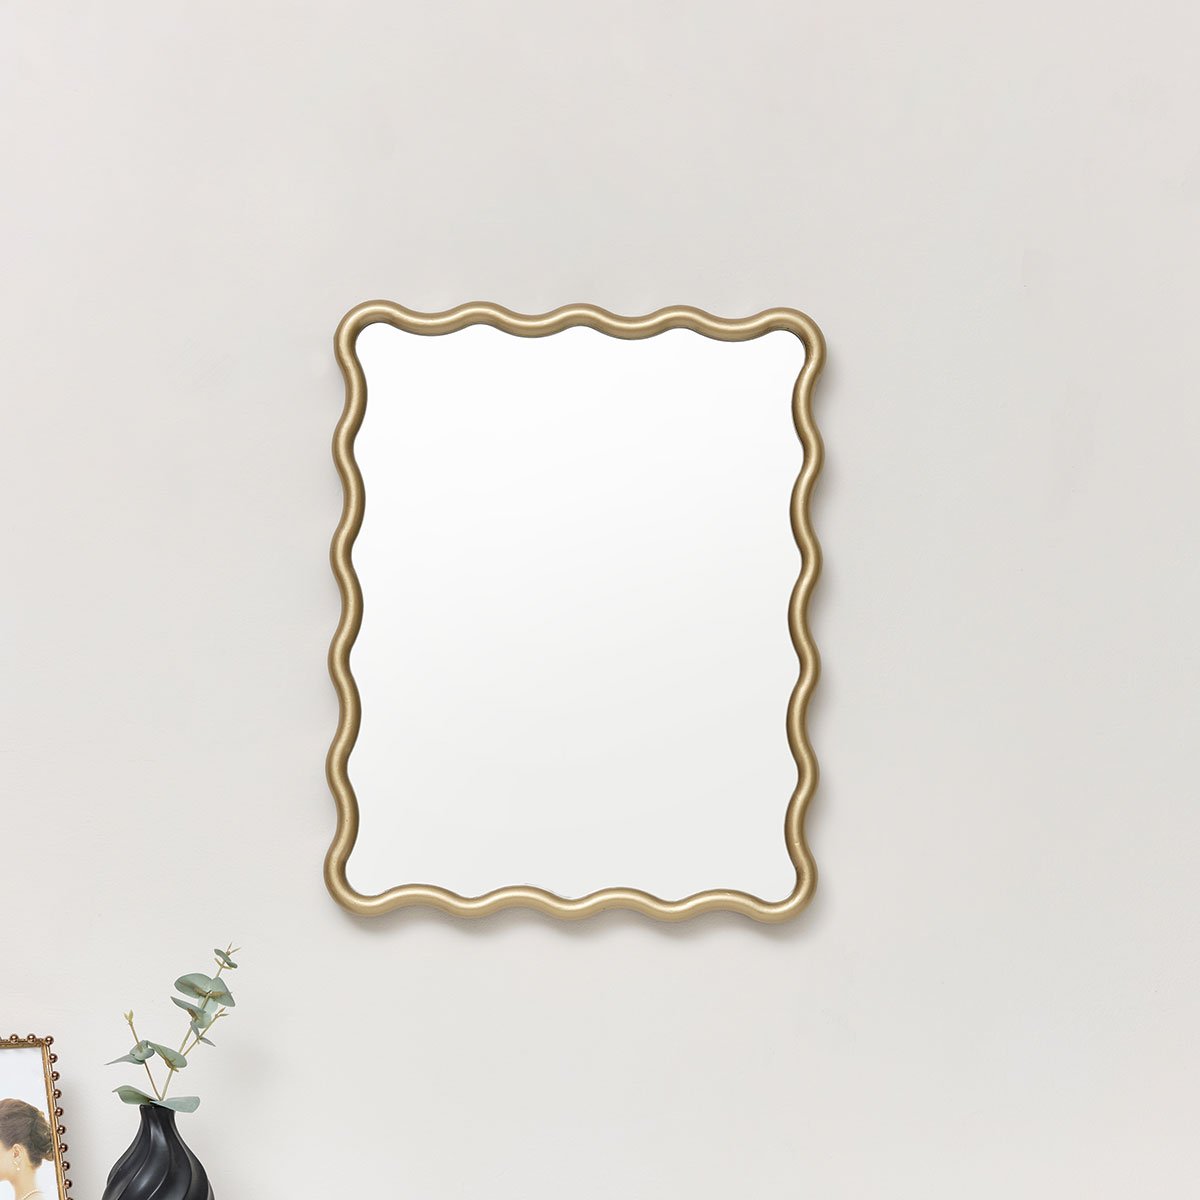 Gold Wave Framed Wall Mirror 50cm x 40cm